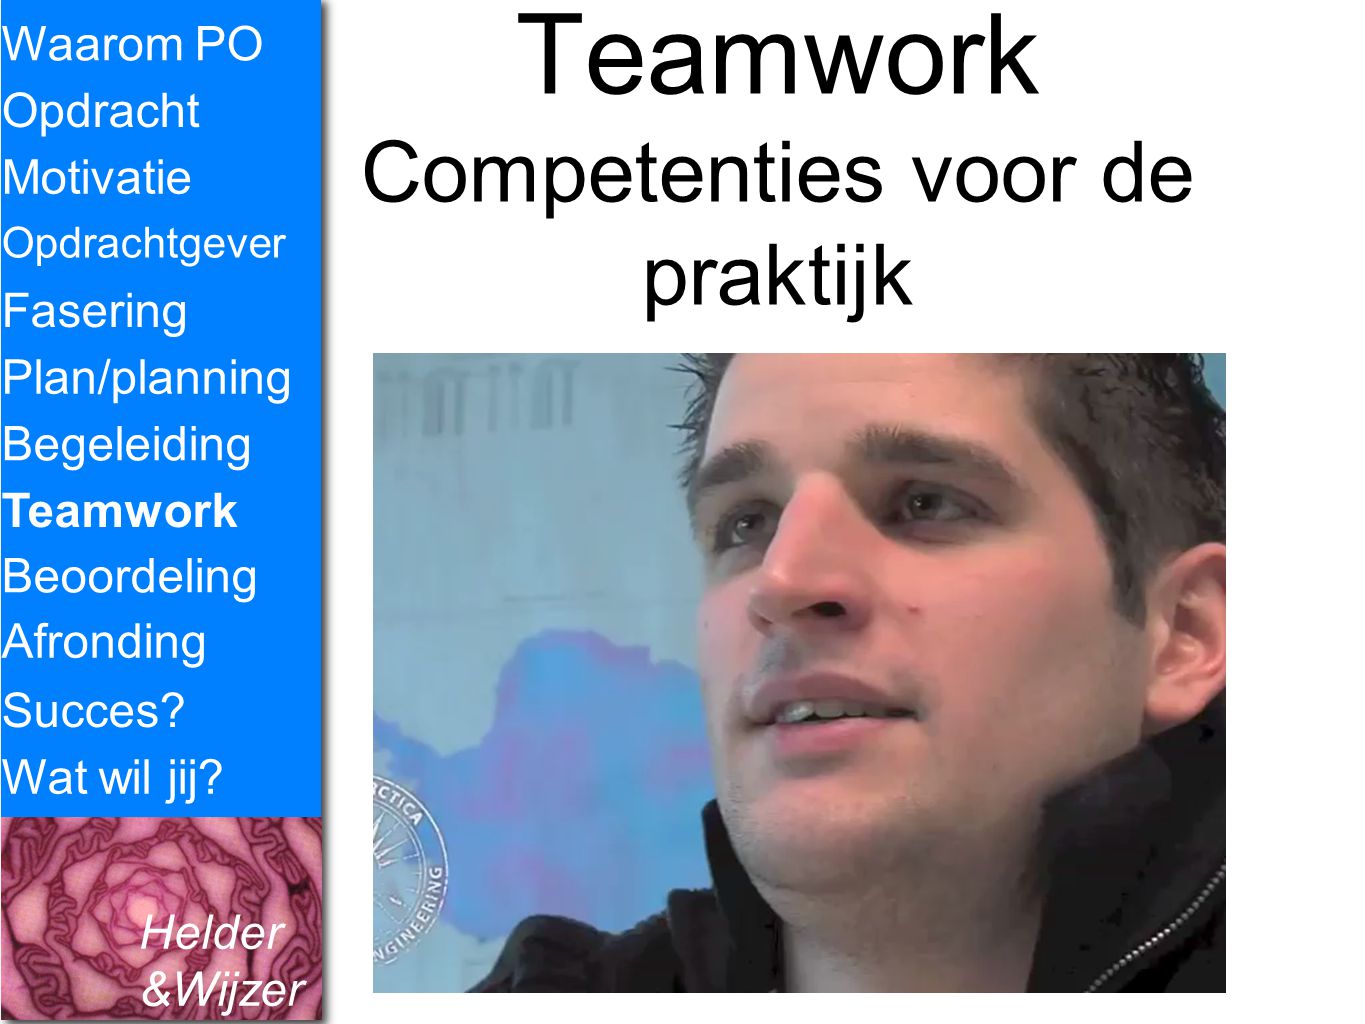 Teamwork Competenties voor de praktijk